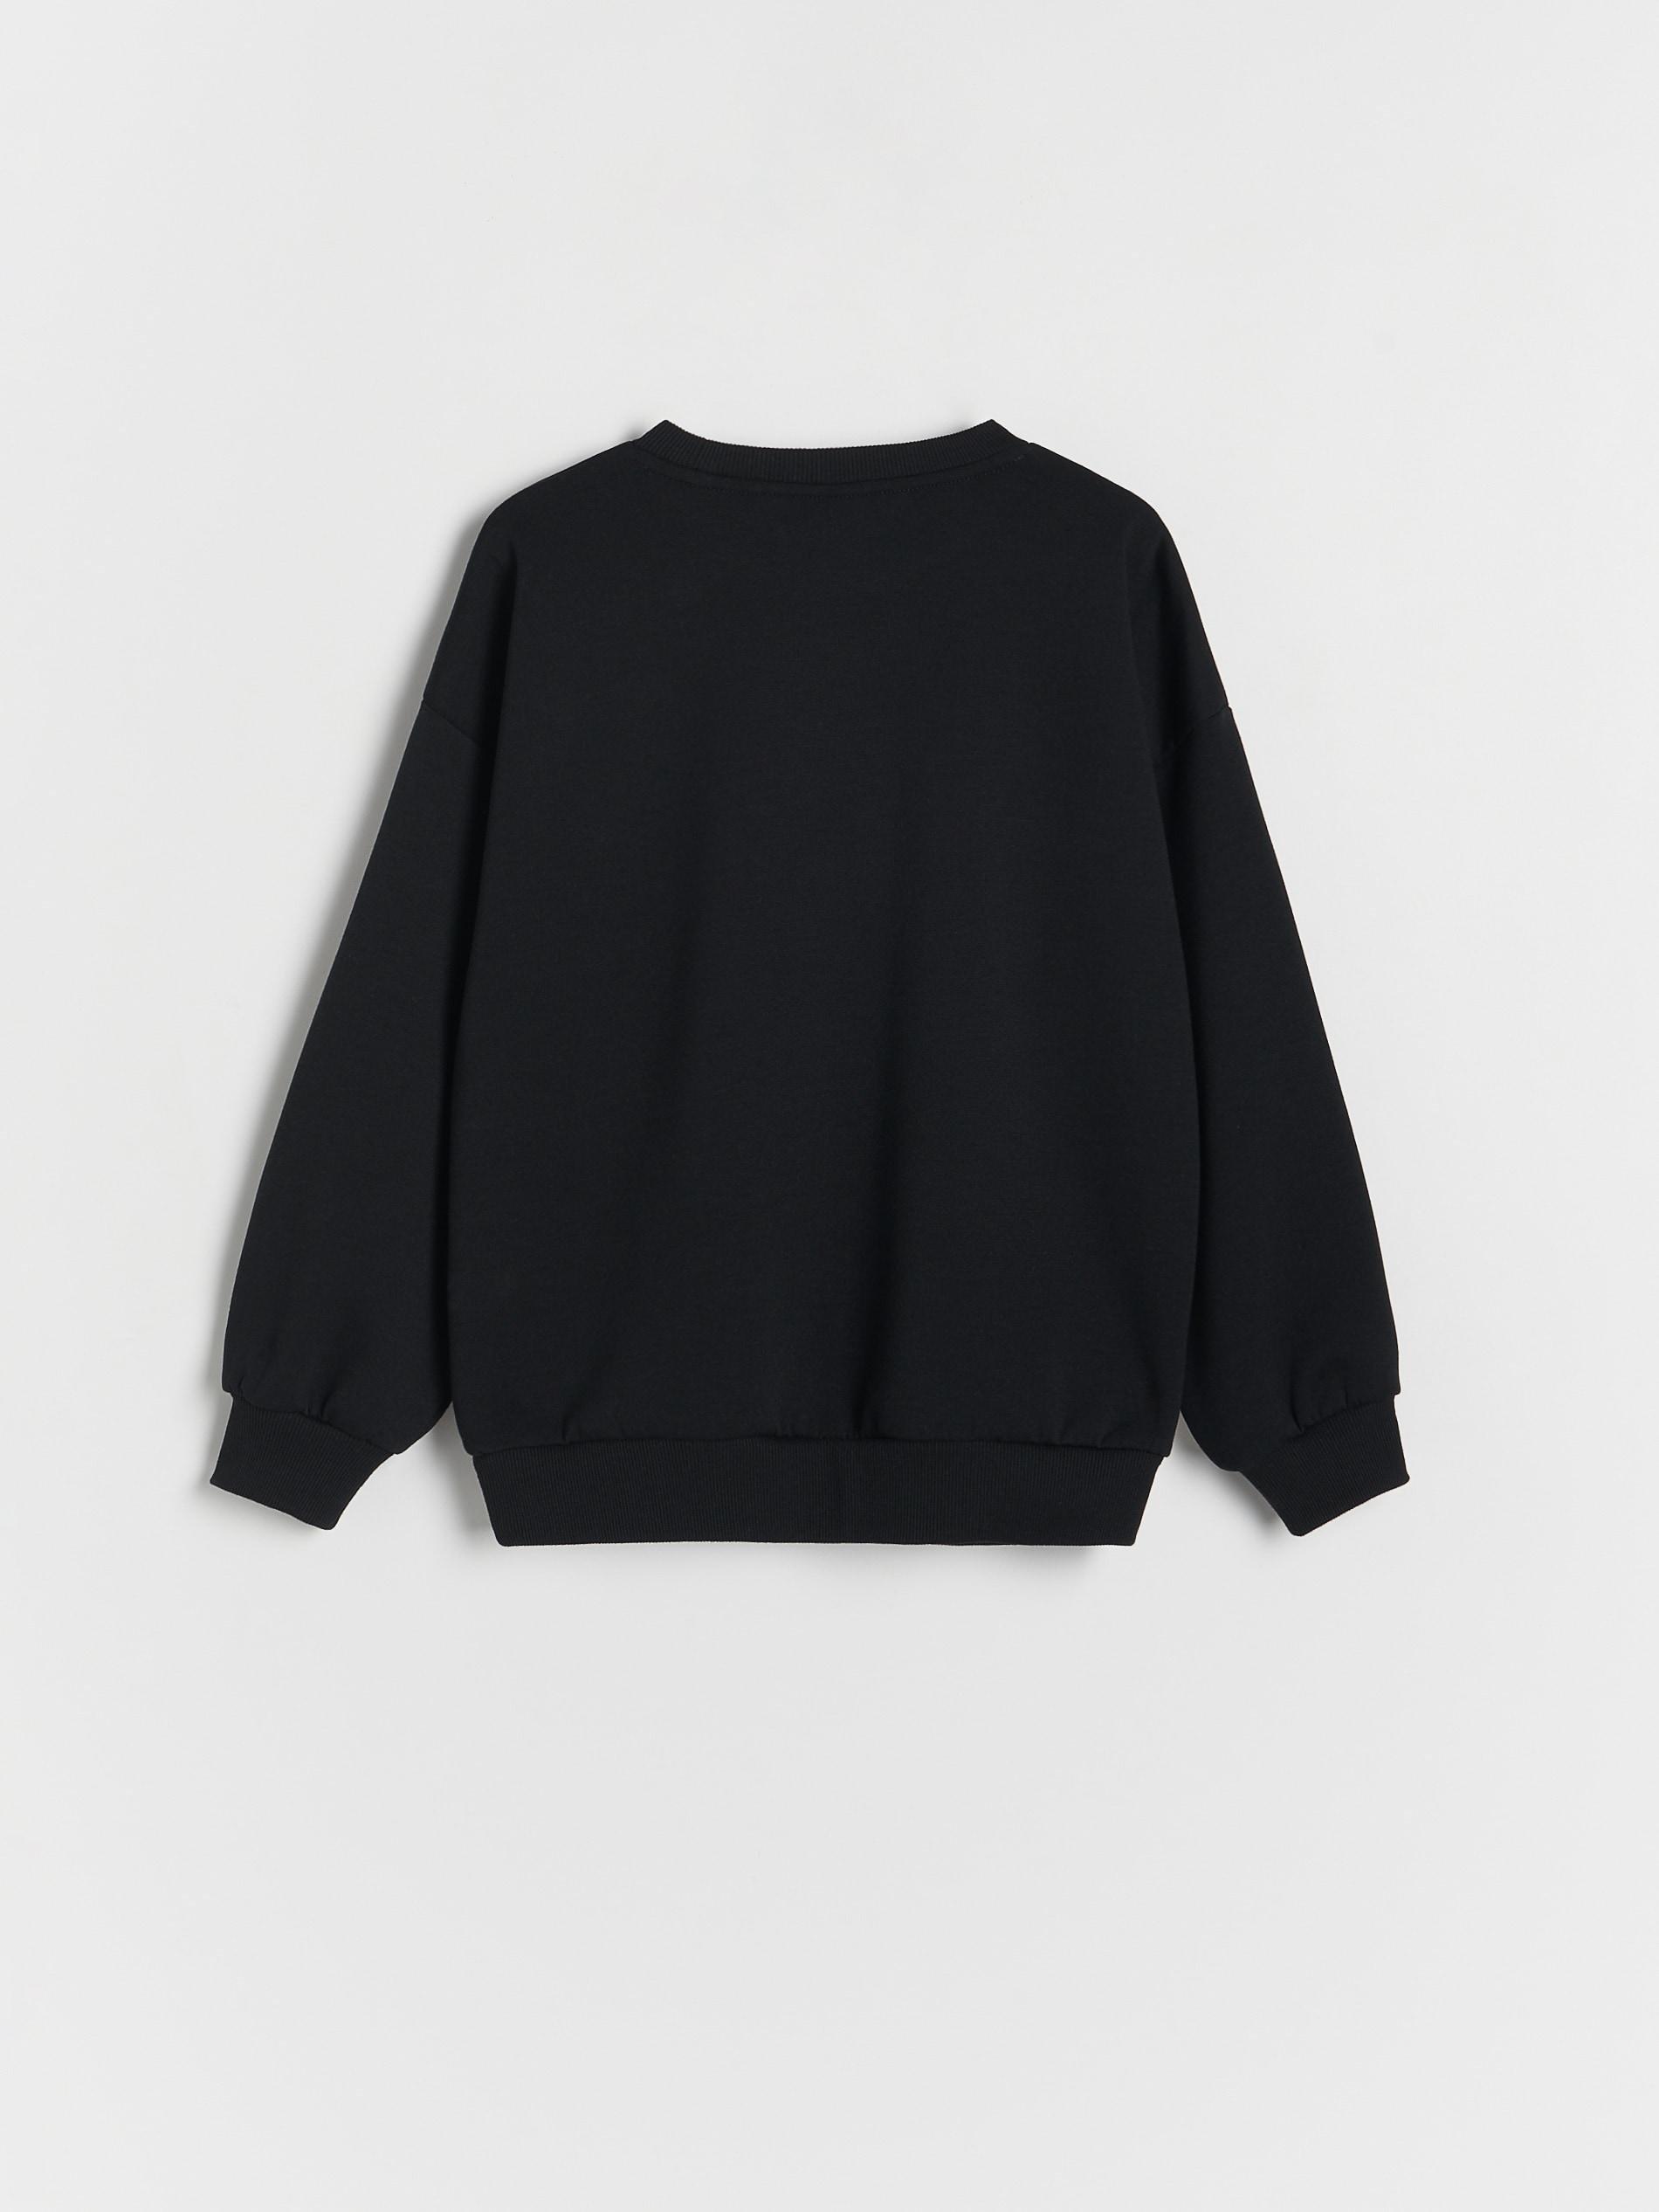 Reserved - Black Printed Sweatshirt, Kids Boys